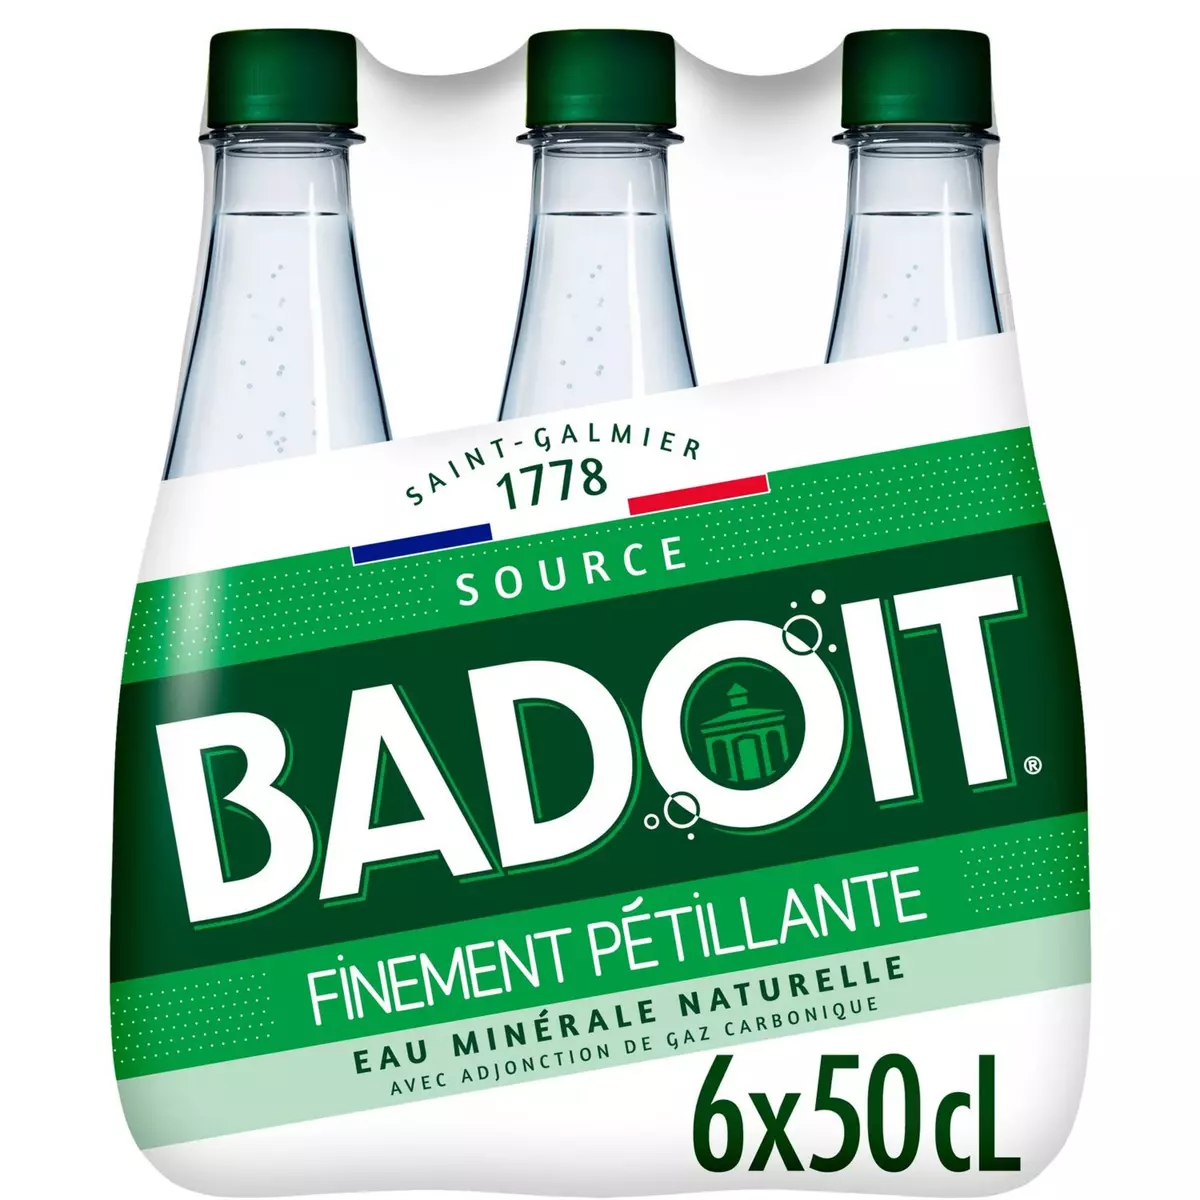 BADOIT Eau gazeuse minérale verte finement pétillante bouteilles 6x50cl